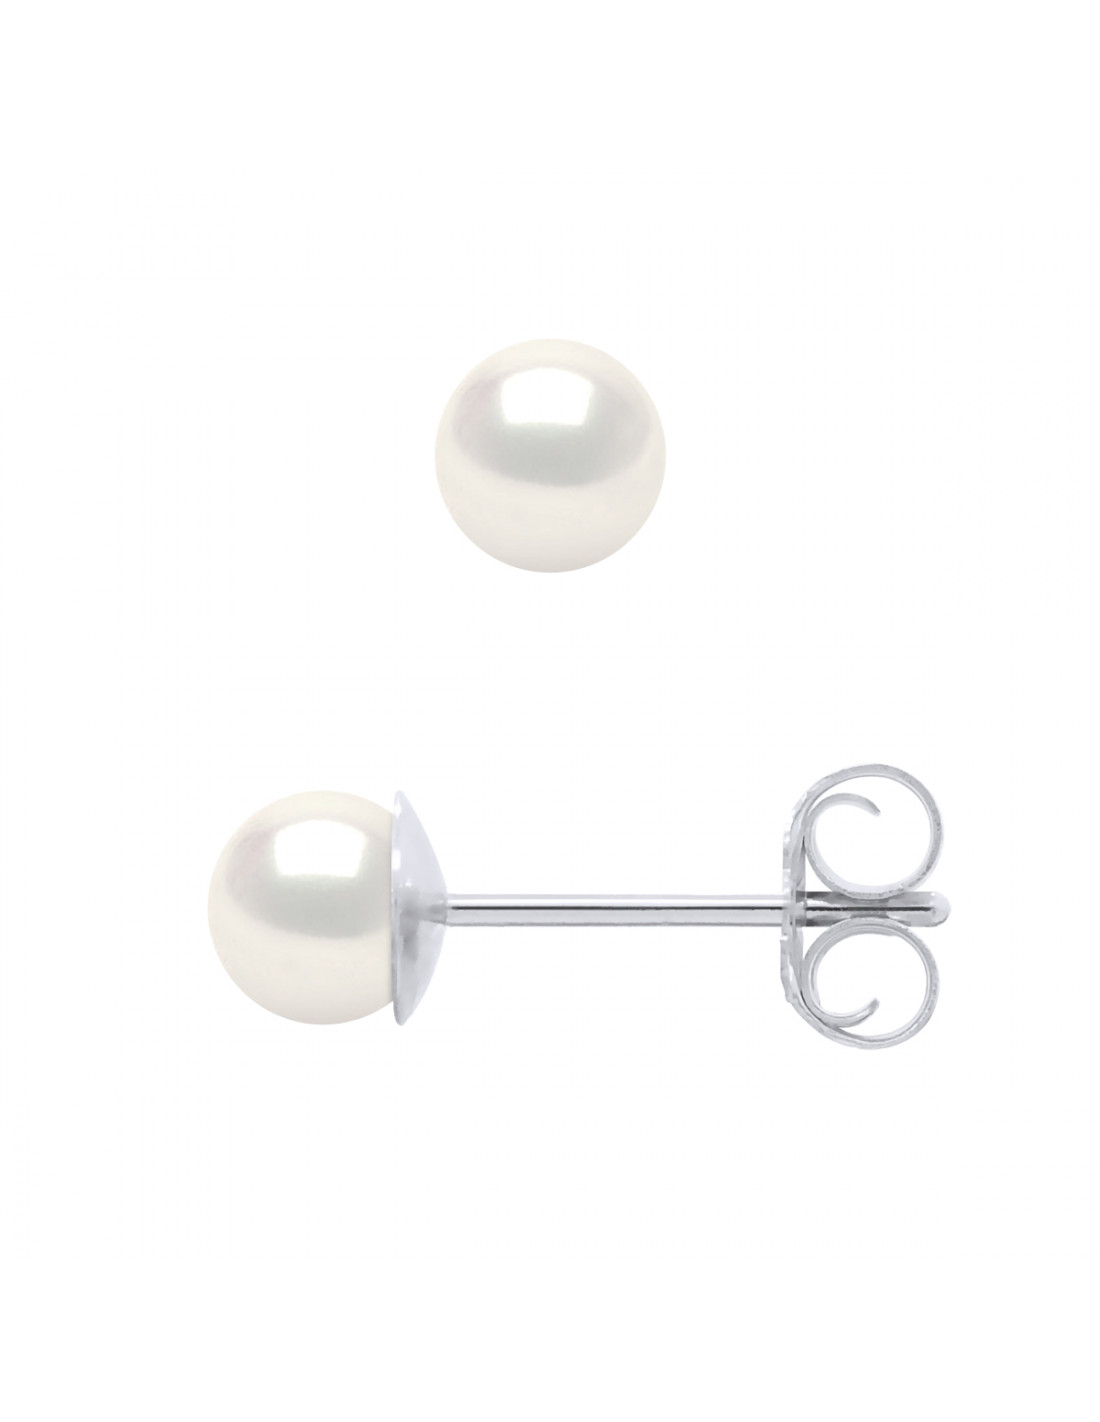 Création Boucles d'oreille perles modèle « Claire » Longueur 5 cm neuves